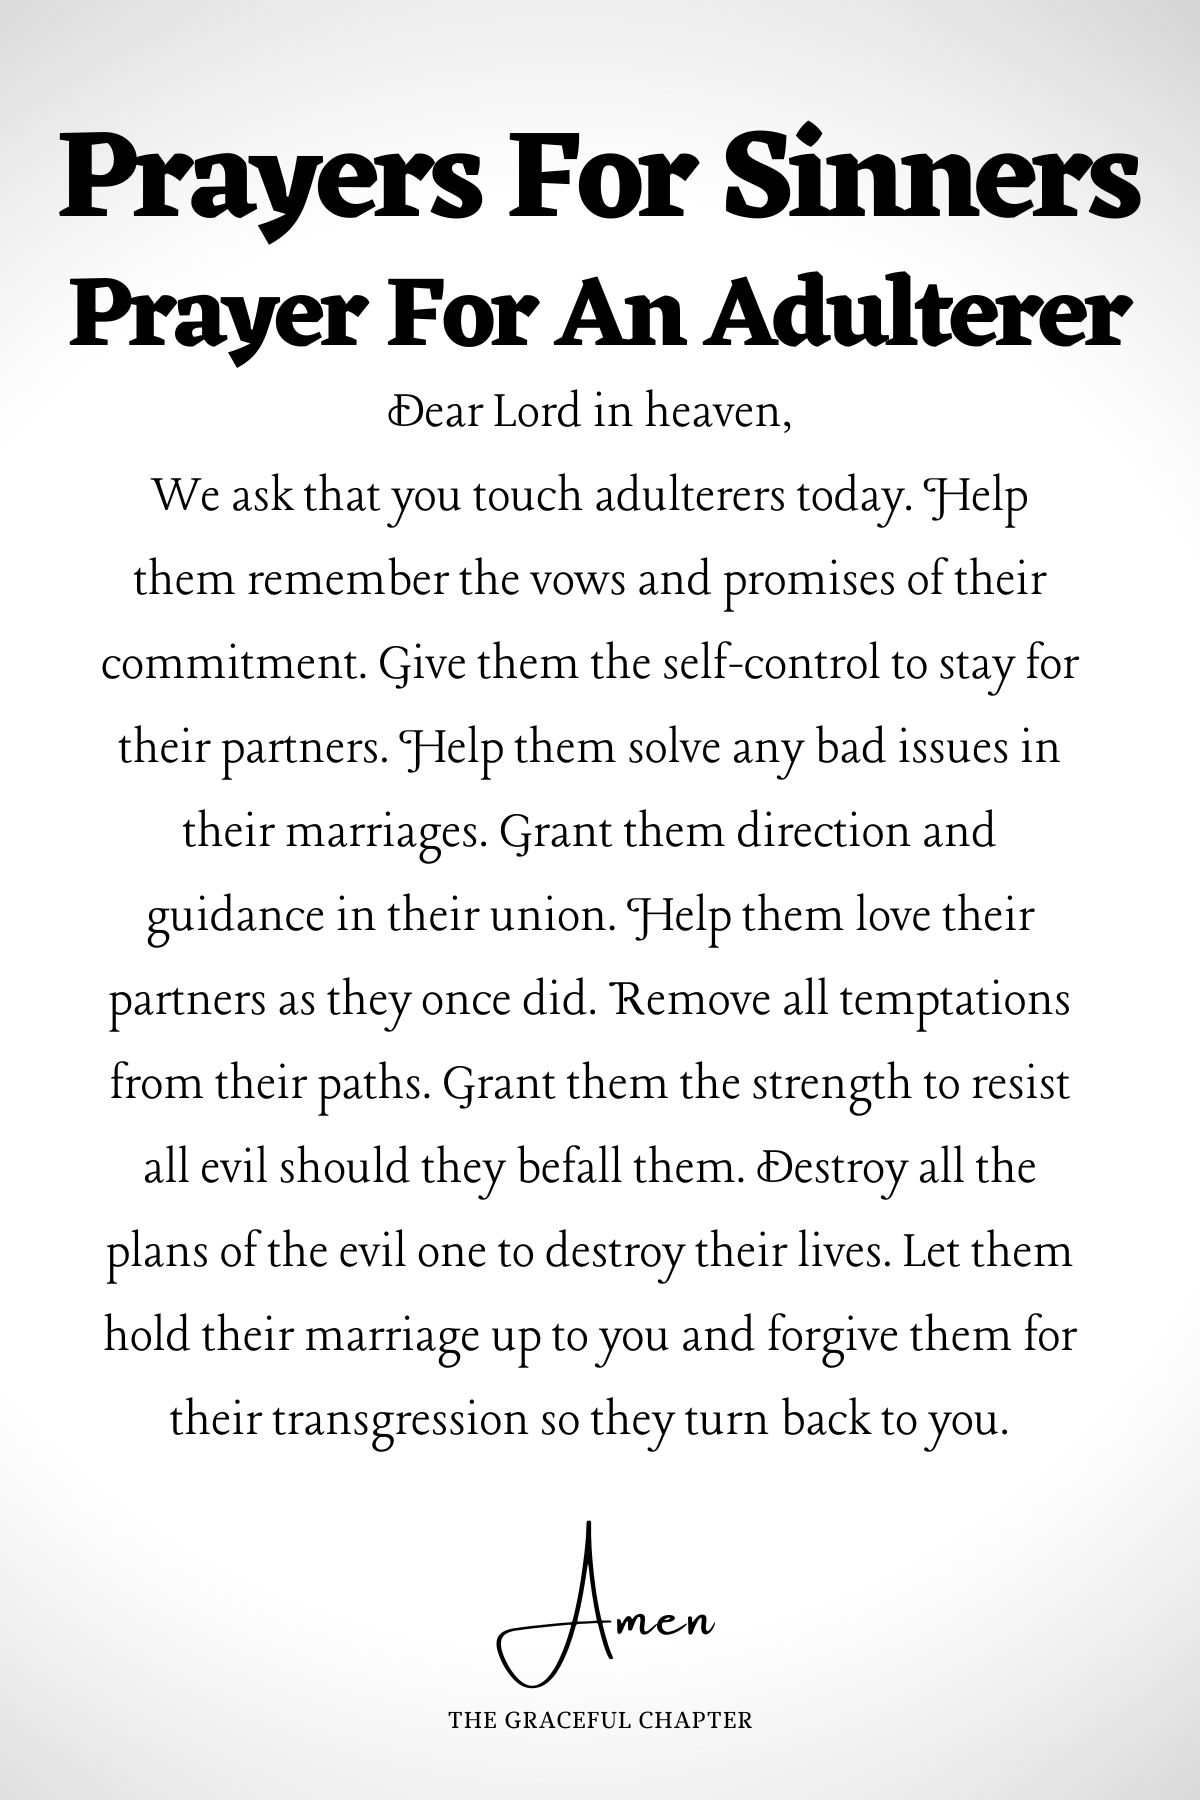 Prayer for an adulterer